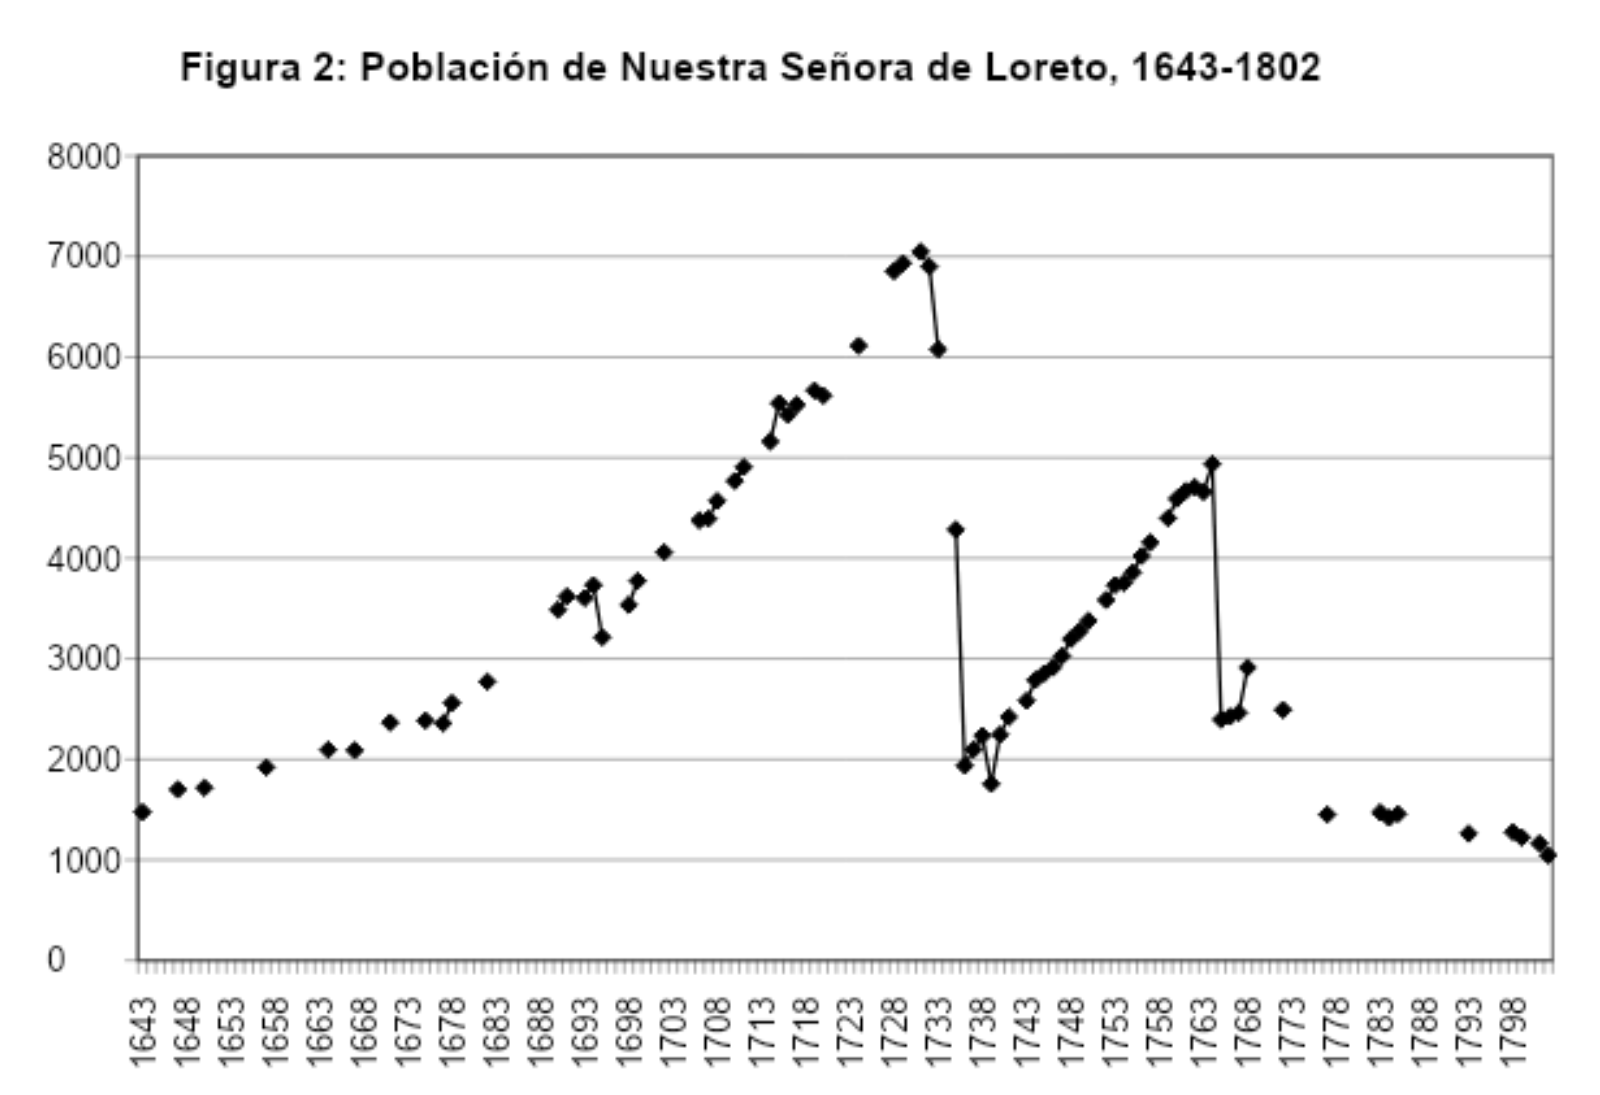 Fig. 2 - Población de Nuestra Señora de Loreto, 1643-1802